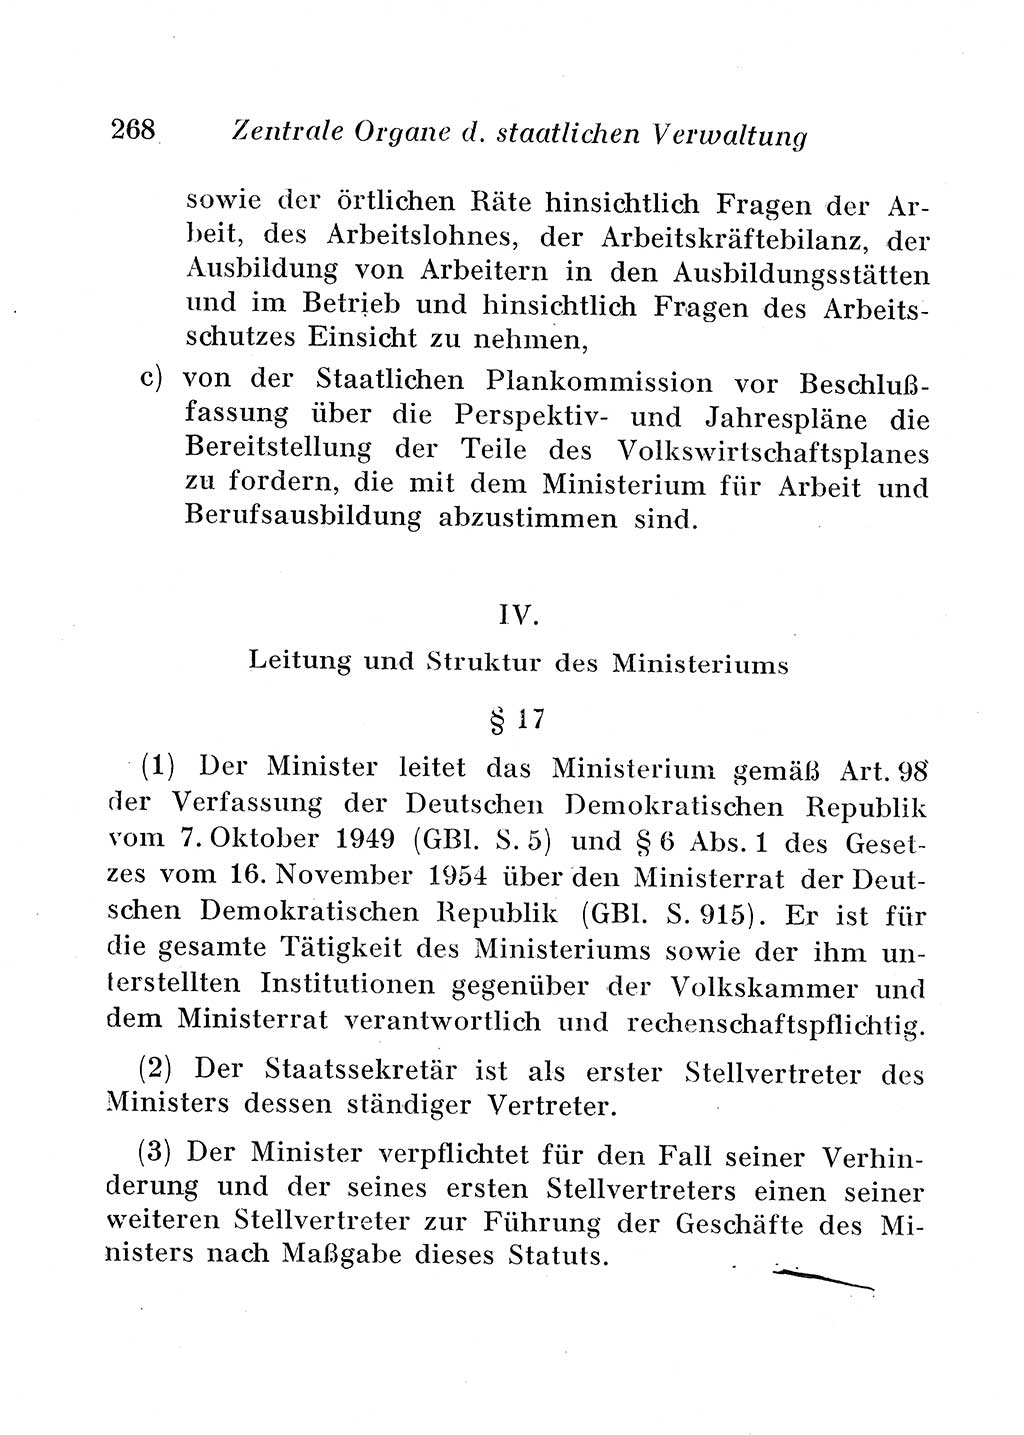 Staats- und verwaltungsrechtliche Gesetze der Deutschen Demokratischen Republik (DDR) 1958, Seite 268 (StVerwR Ges. DDR 1958, S. 268)